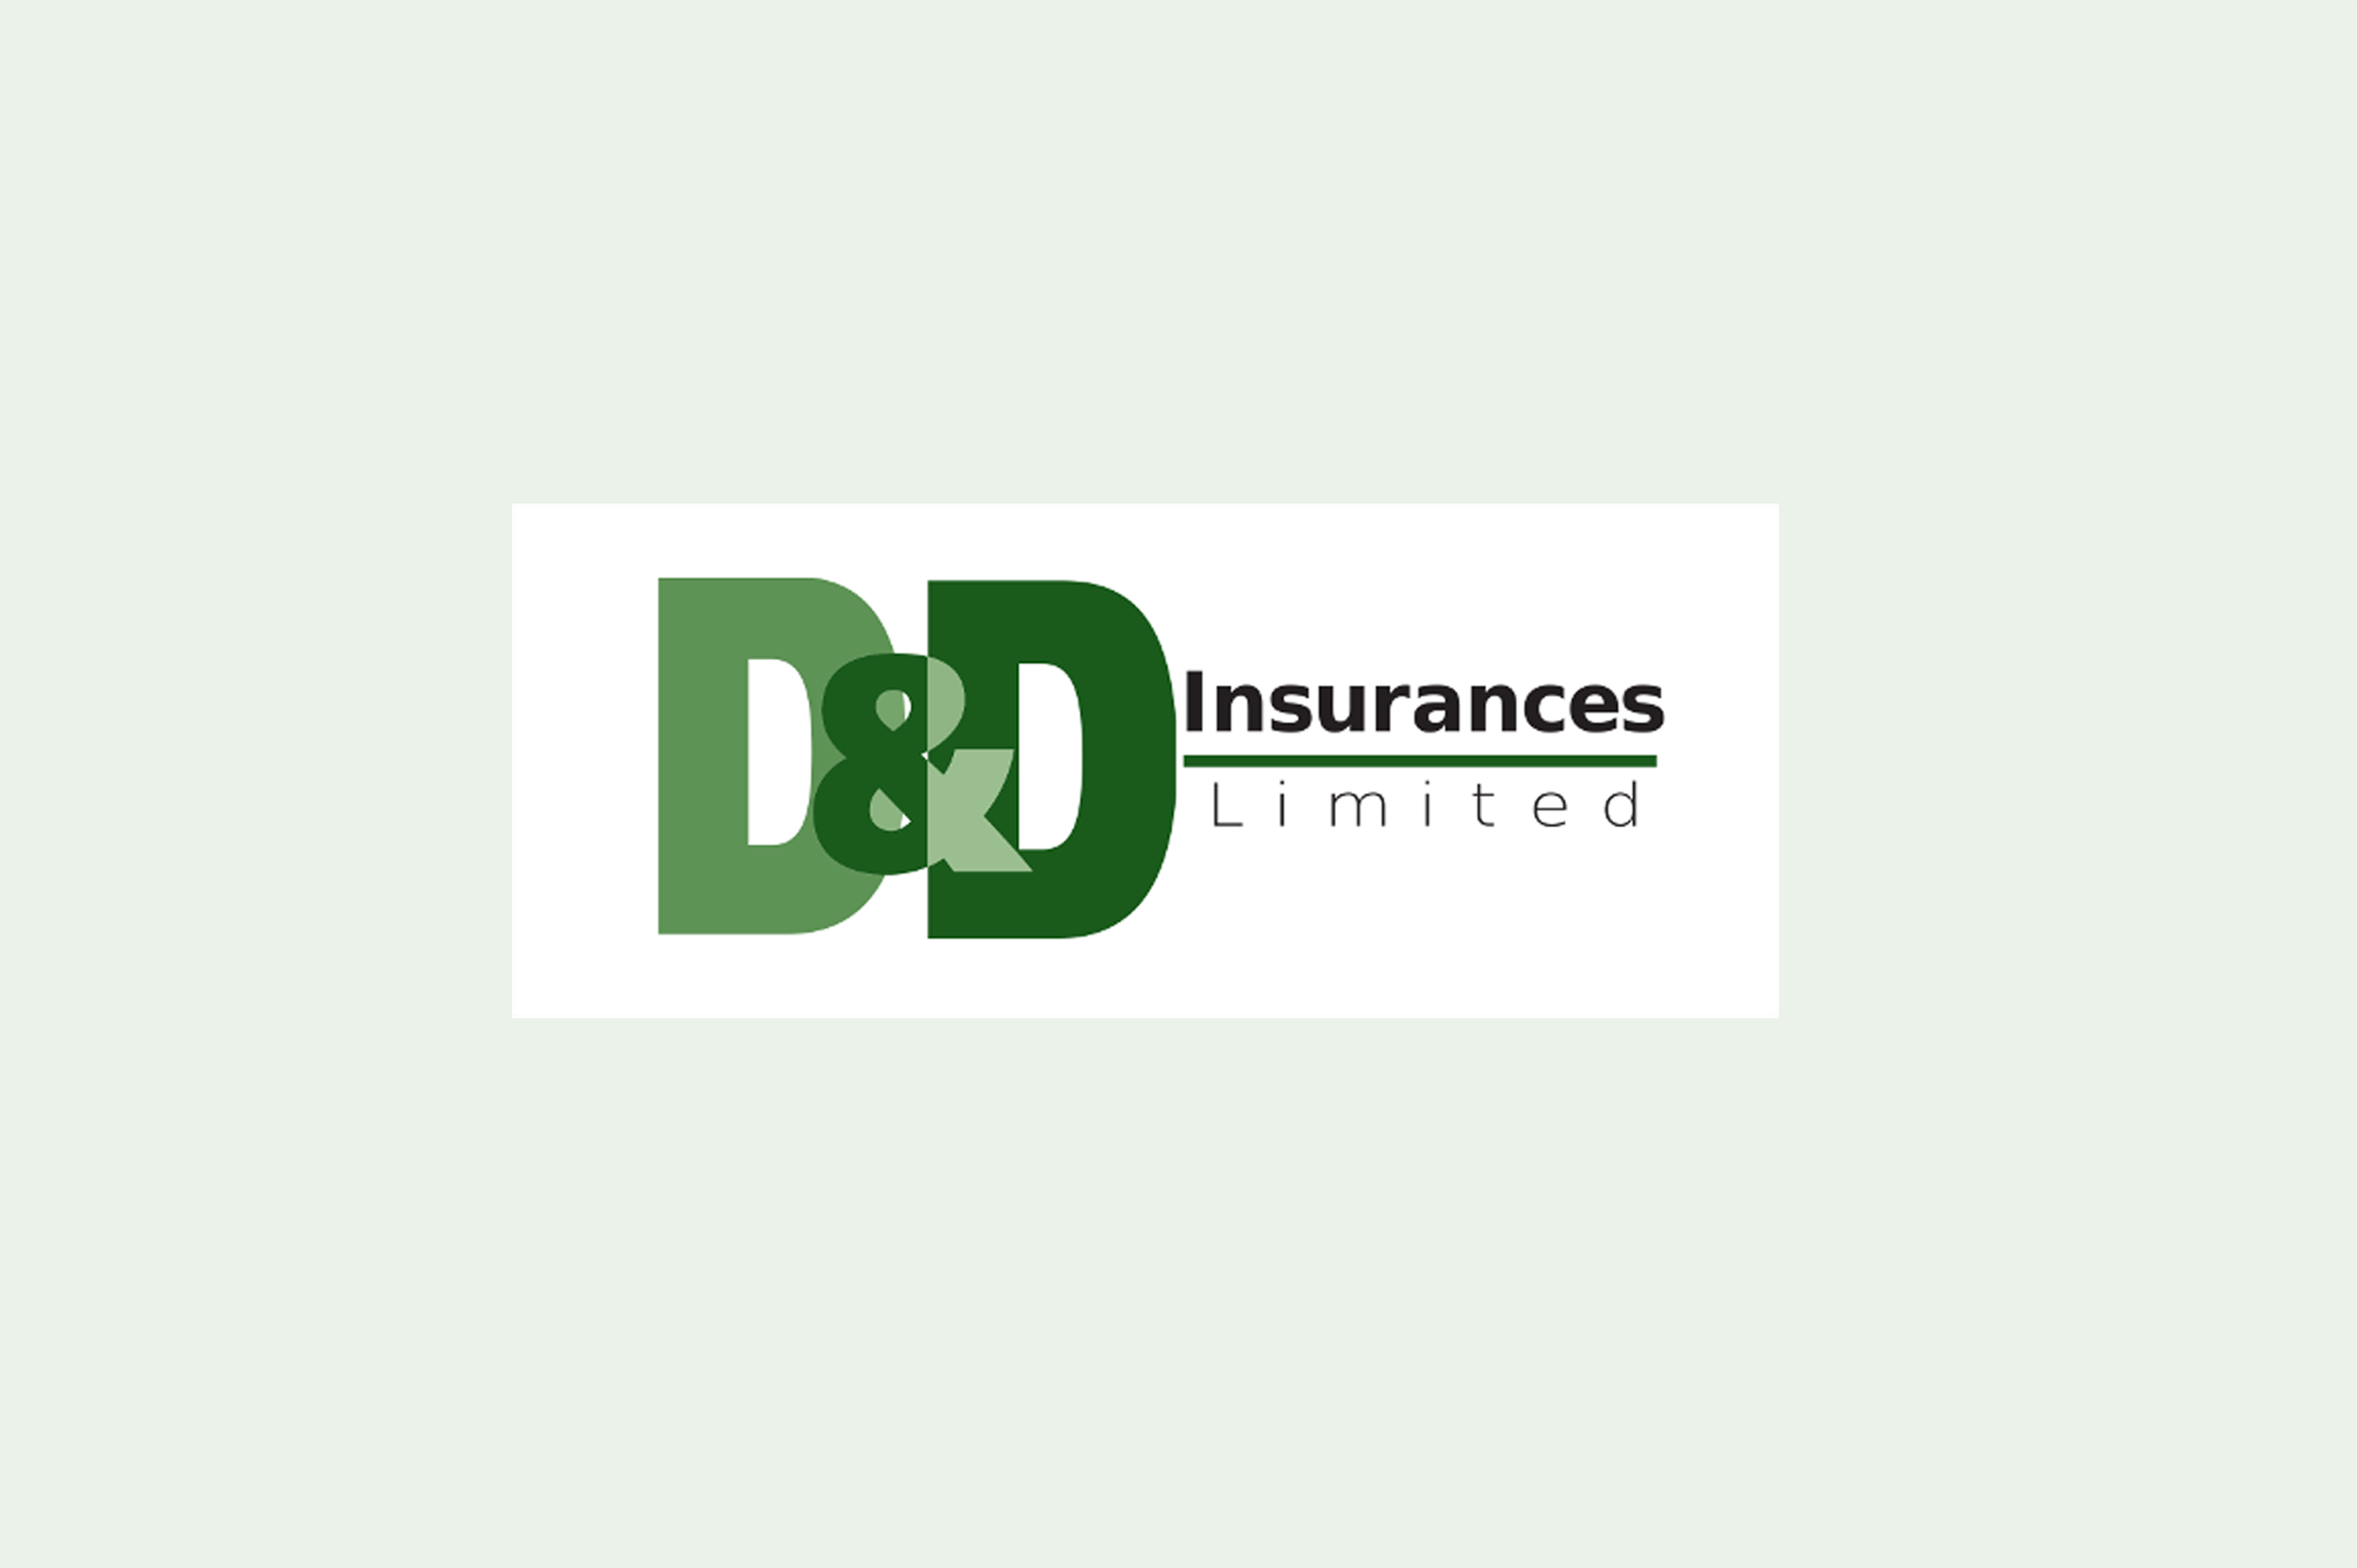 D&D insurances